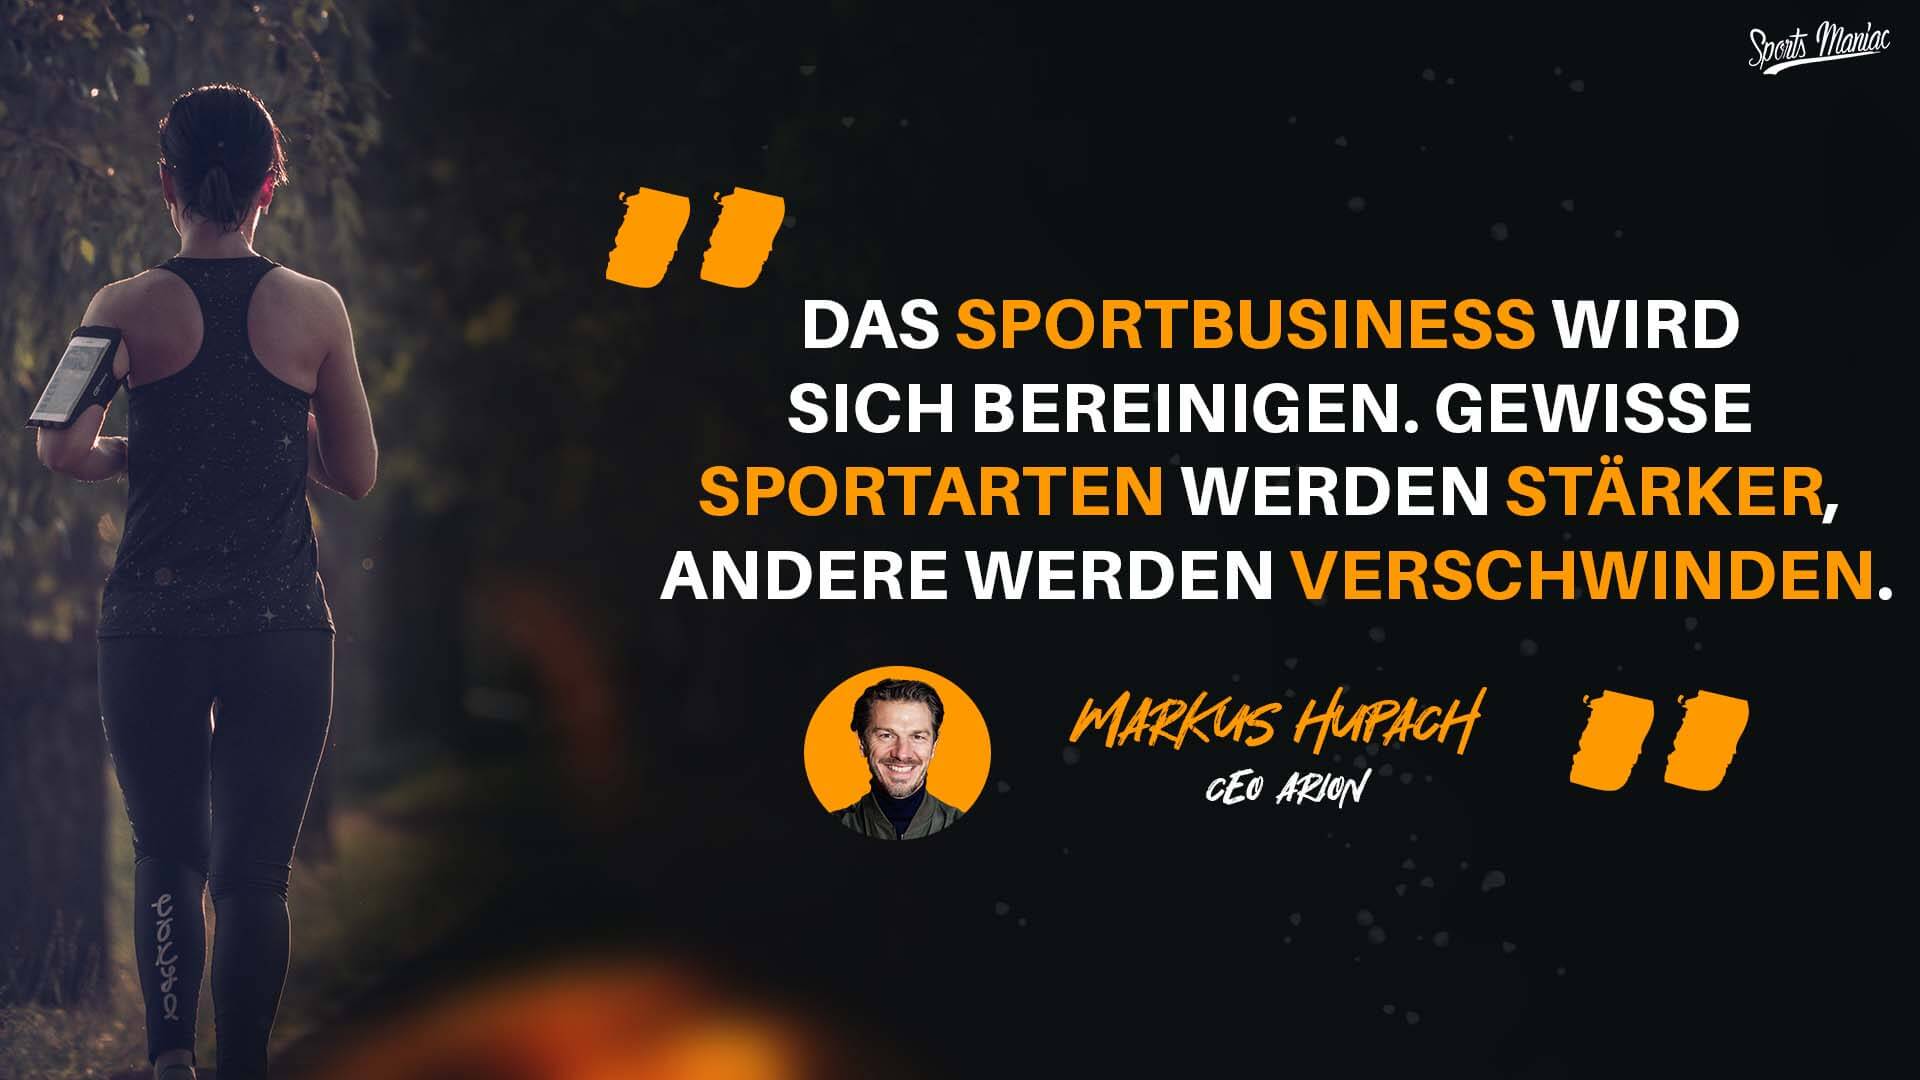 "Das Sportbusiness wird sich bereinigen. Gewisse Sportarten werden stärker, andere werden verschwinden." – Markus Hupach in den Best-of-Seven